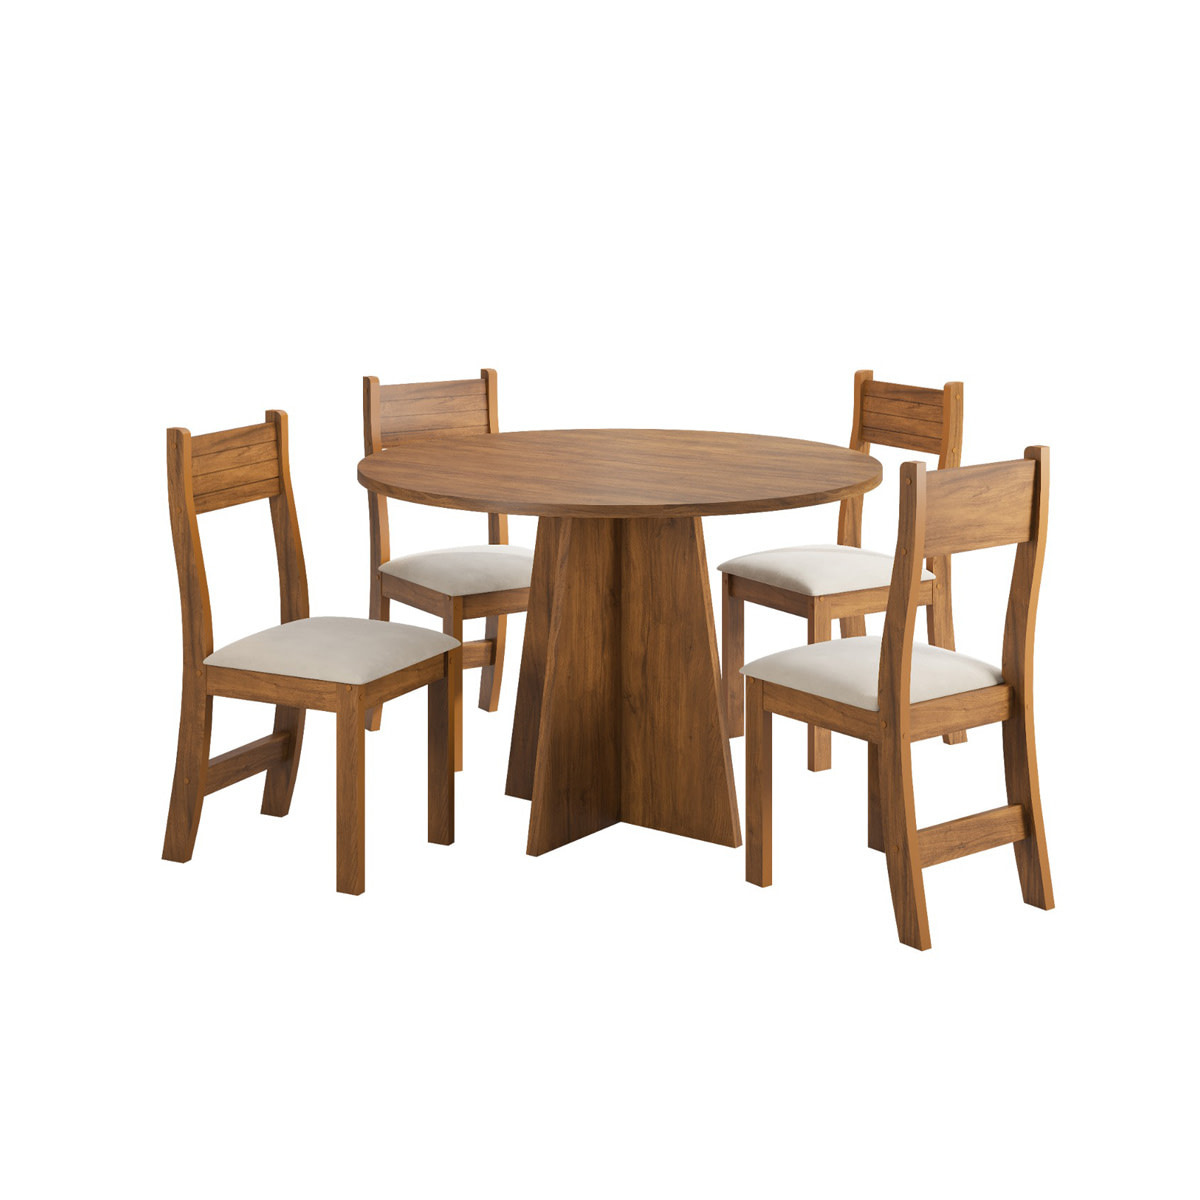  Juego de mesa de comedor de madera con 4 sillas